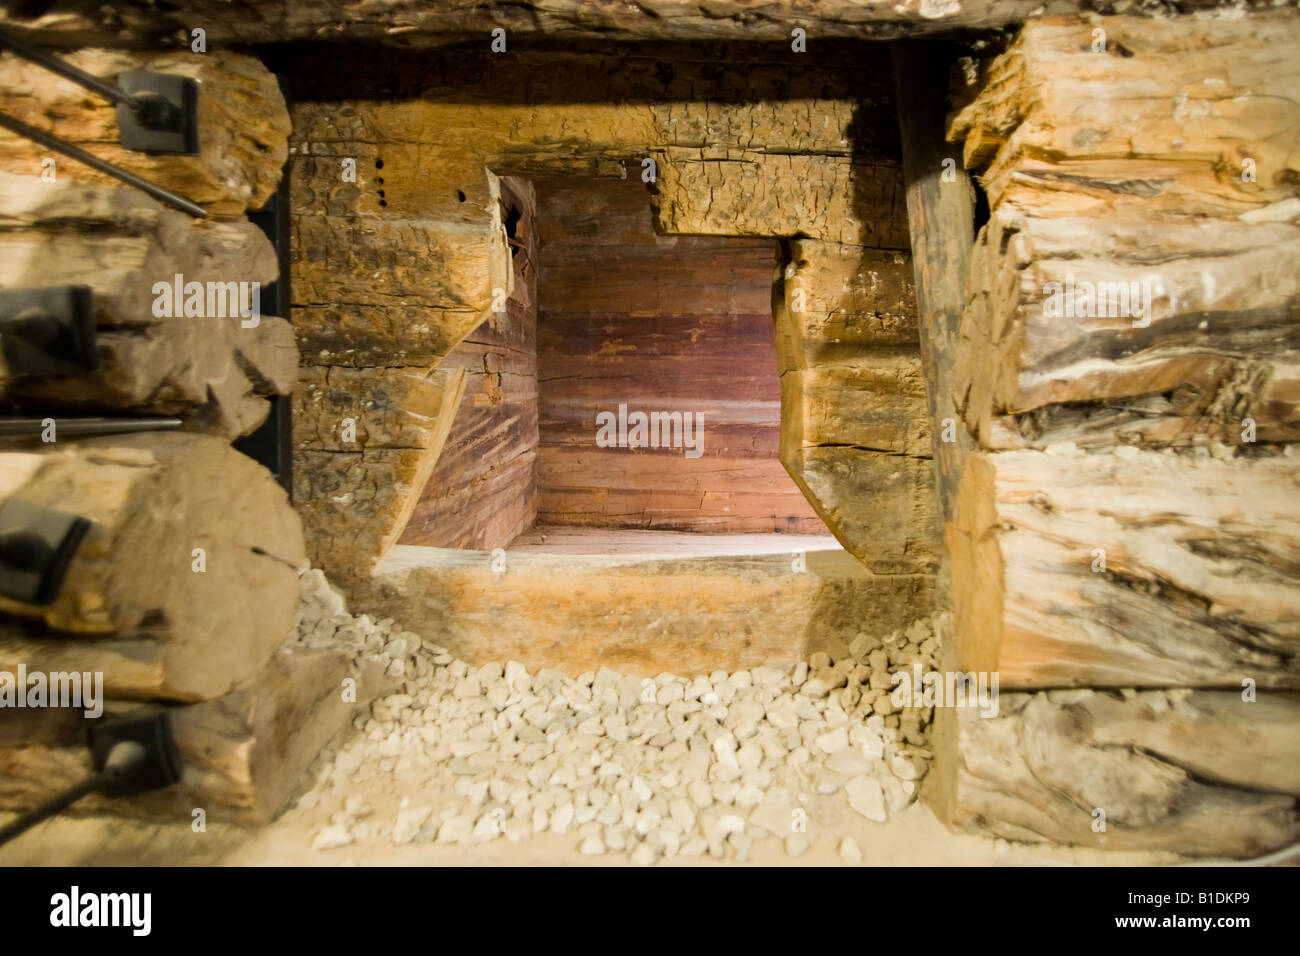 Dans la chambre funéraire dans la tombe du roi Midas la capitale de l'ancienne Phyrgia, Gordion, Yassihoyuk, Turquie Banque D'Images